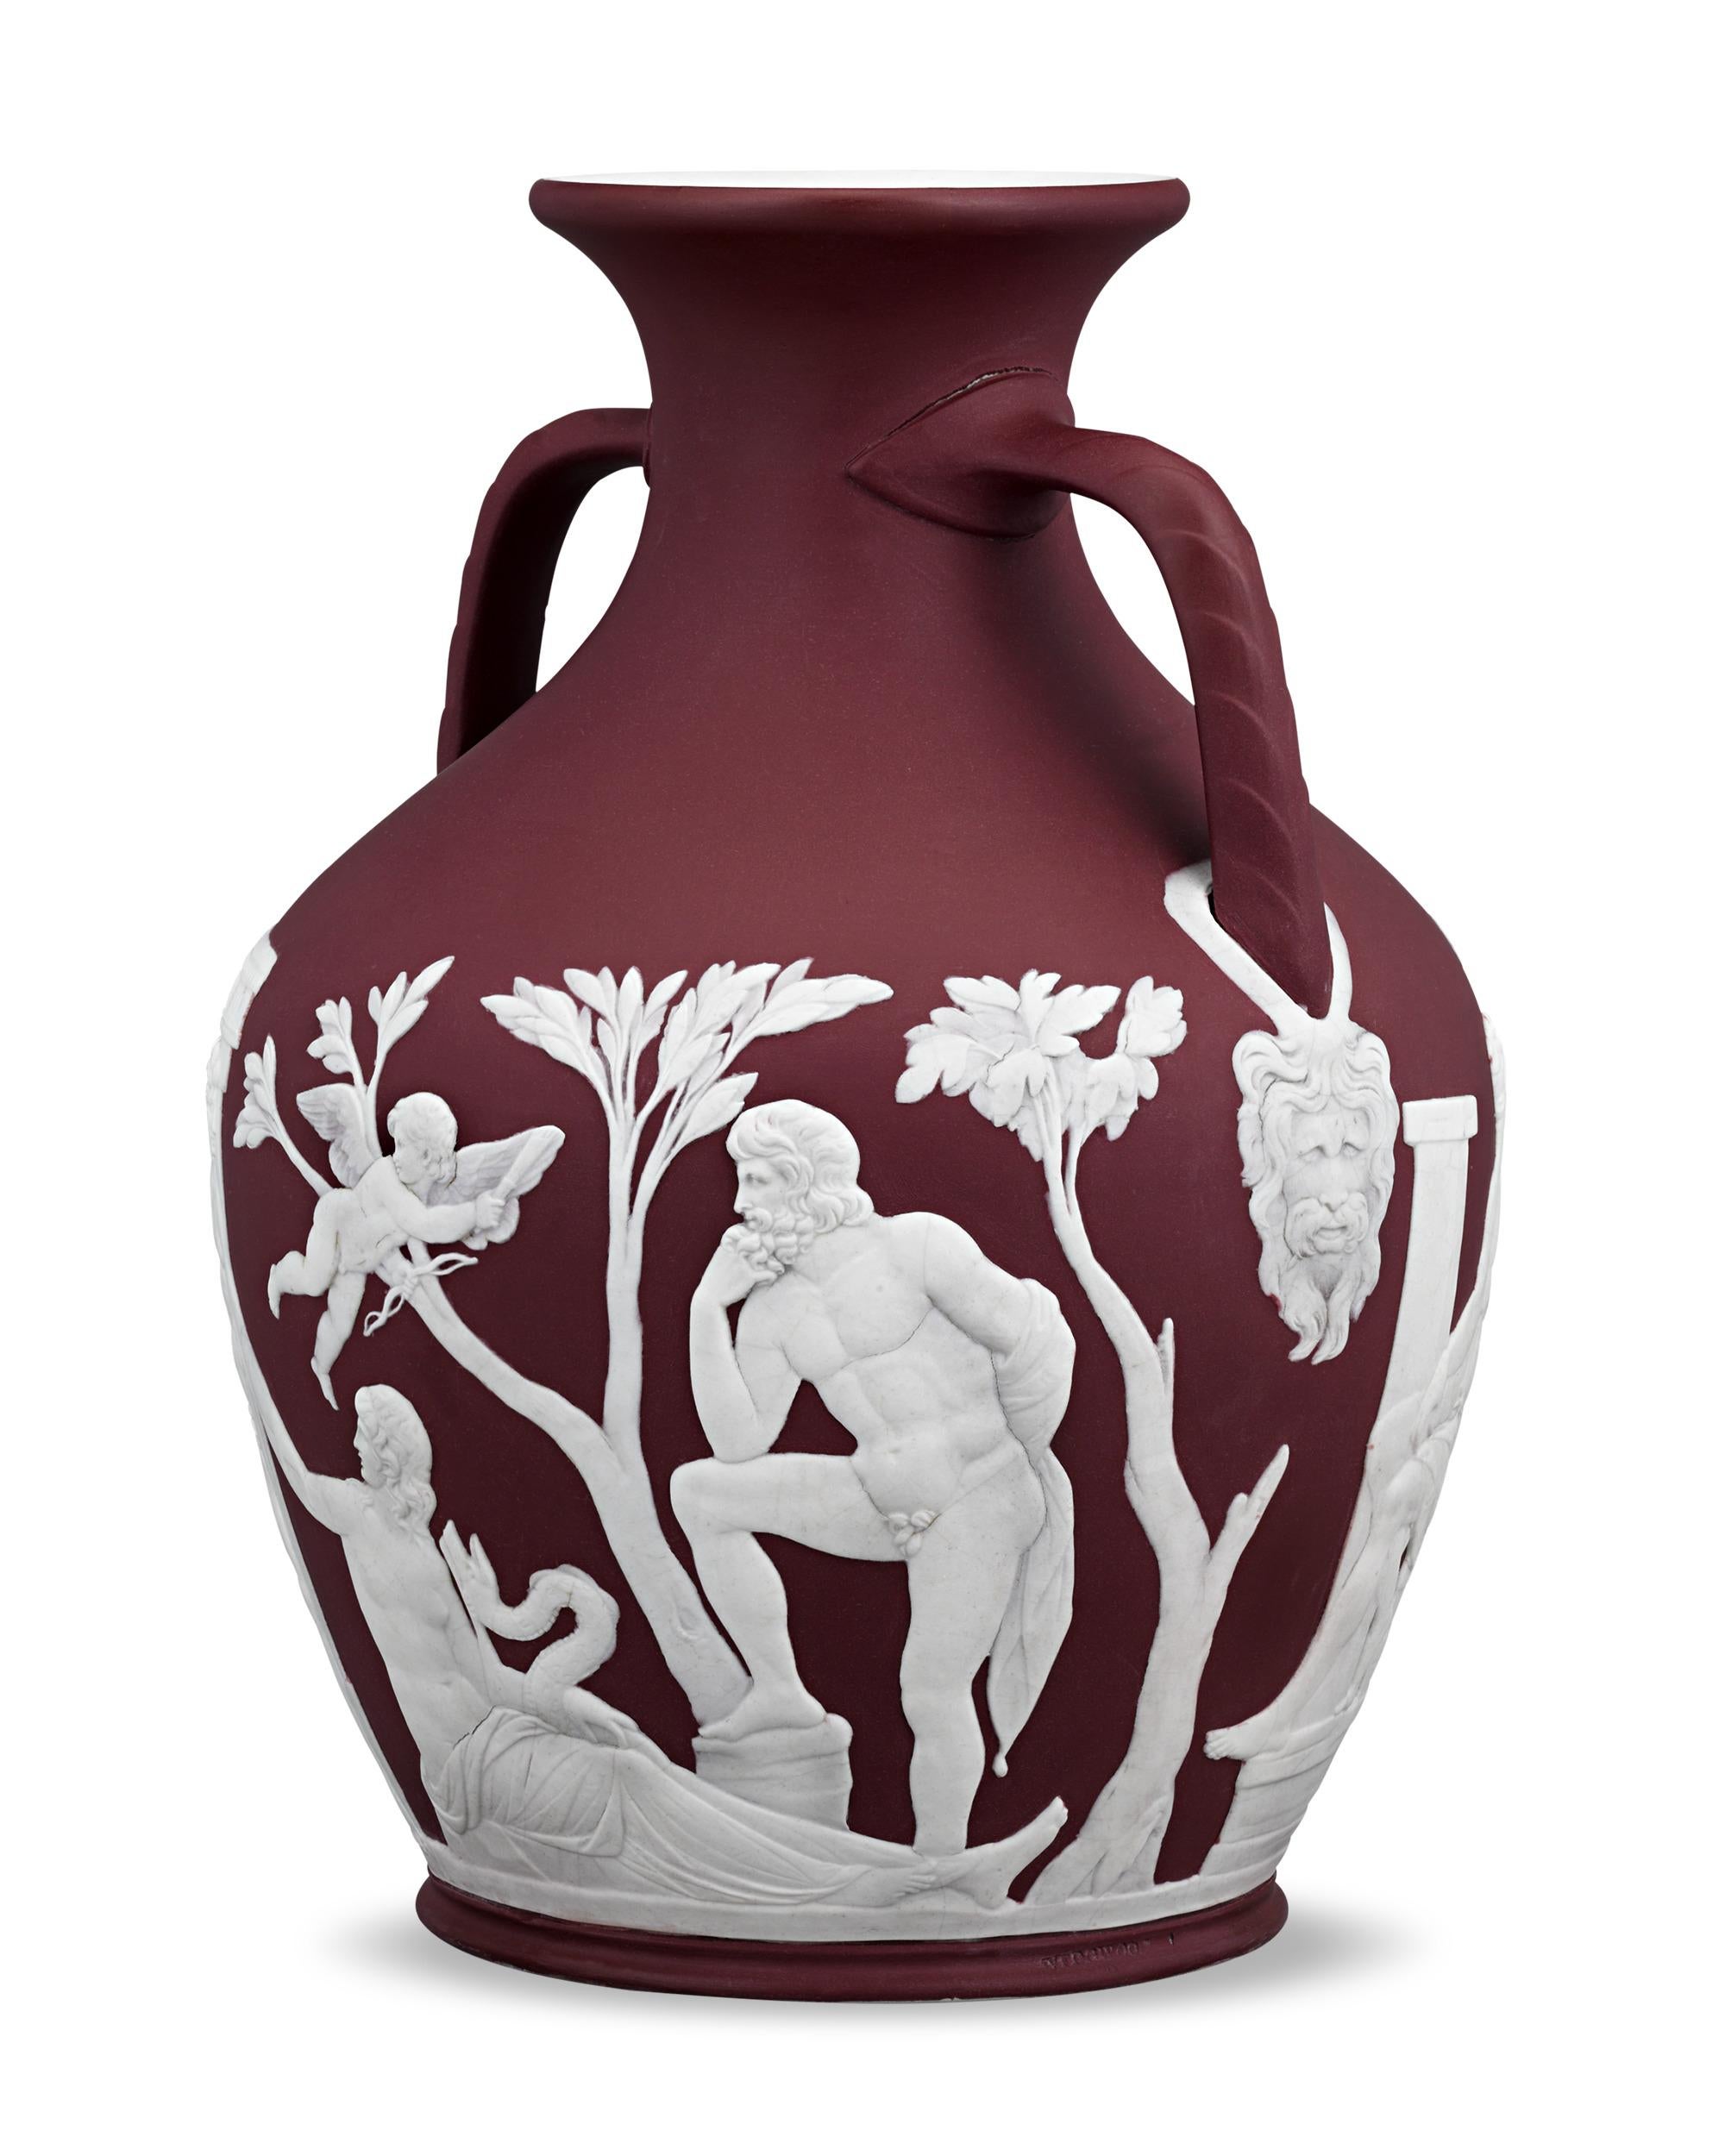 Ce vase Portland de Wedgwood, remarquablement rare, présente une teinte cramoisie très convoitée. La coloration rouge vif étant difficile à contrôler et sujette à des saignements, la manufacture n'a produit des objets en jaspe cramoisi que pendant